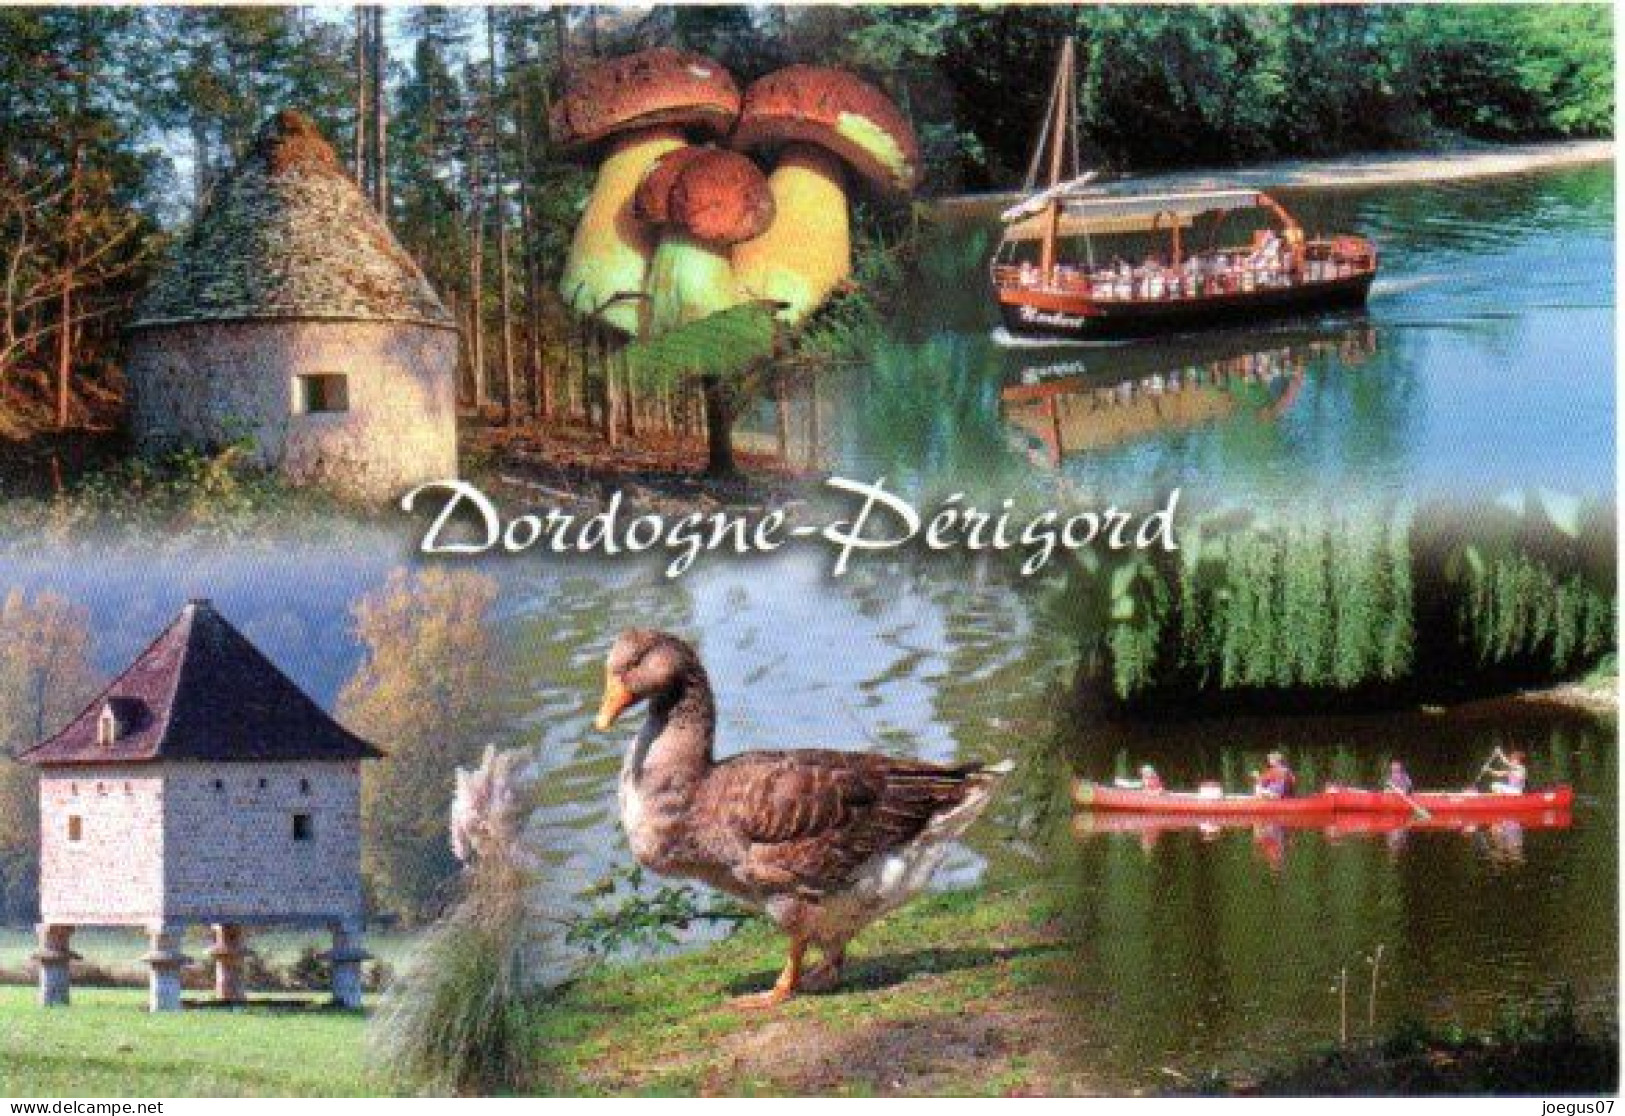 Dordogne-Périgord - Champignon, Cèpes. Borie. Pigeonnier. Gabarre Et Canoë Kayak. Oie - Editions MARCOU N° 24996 - Funghi